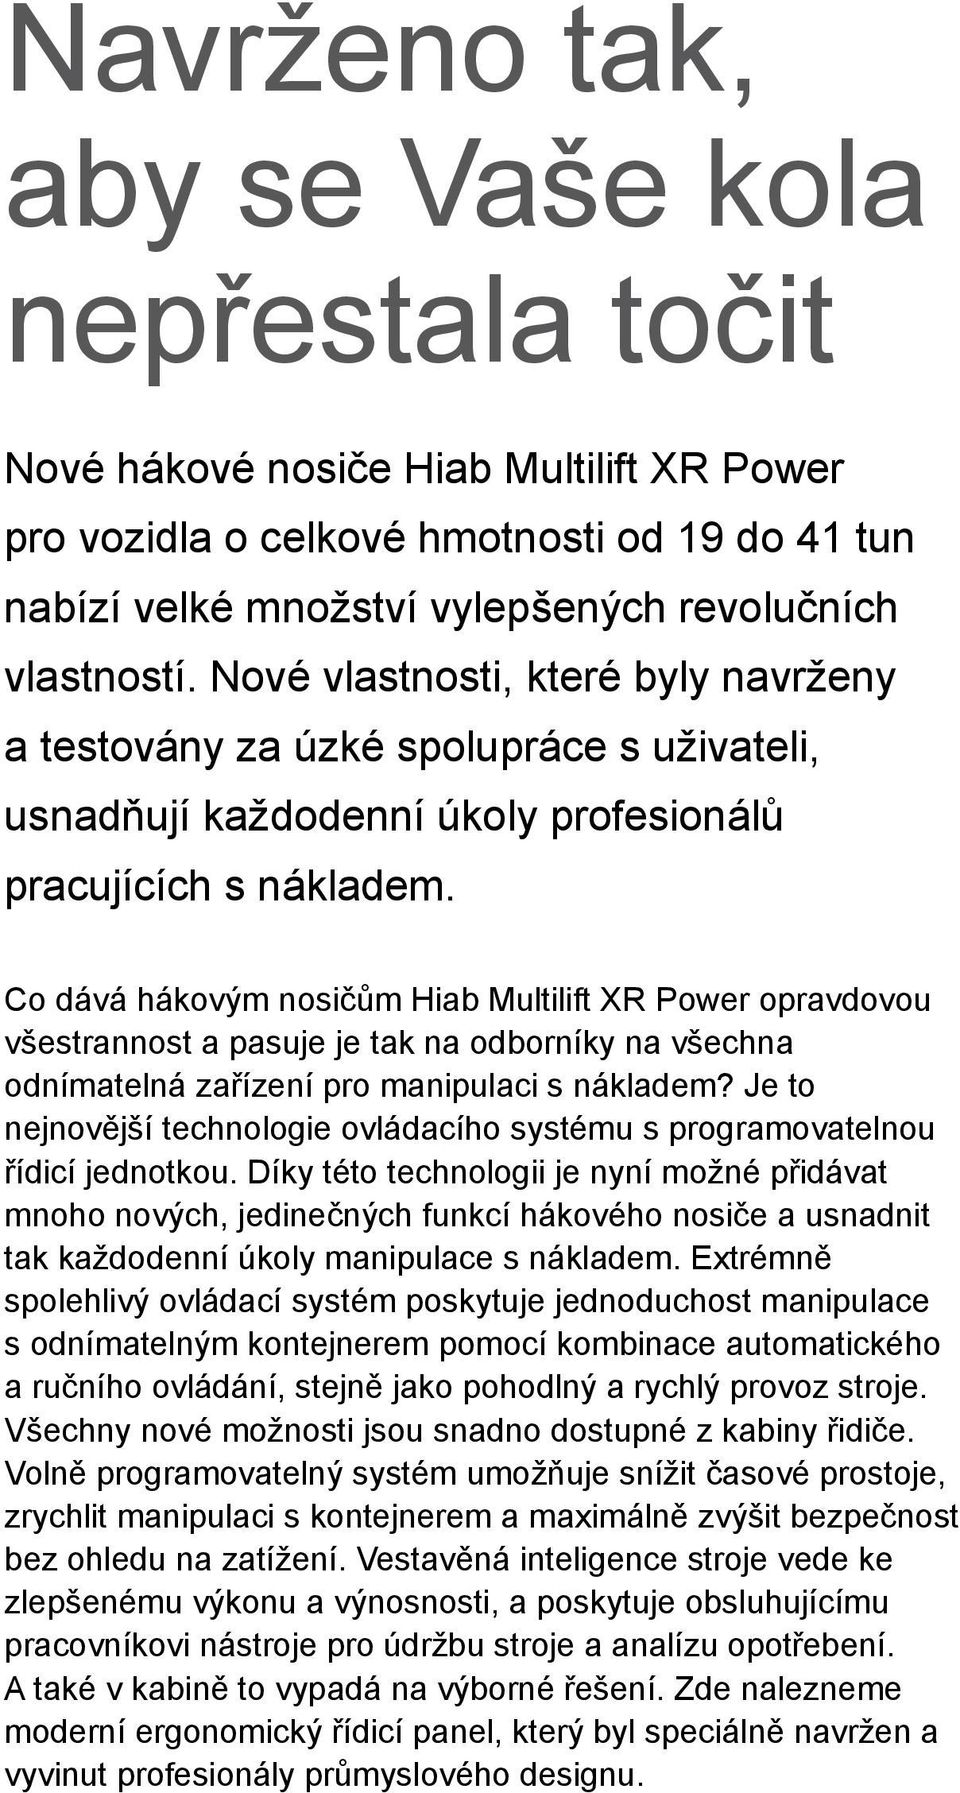 Co dává hákovým nosičům Hiab Multilift XR Power opravdovou všestrannost a pasuje je tak na odborníky na všechna odnímatelná zařízení pro manipulaci s nákladem?